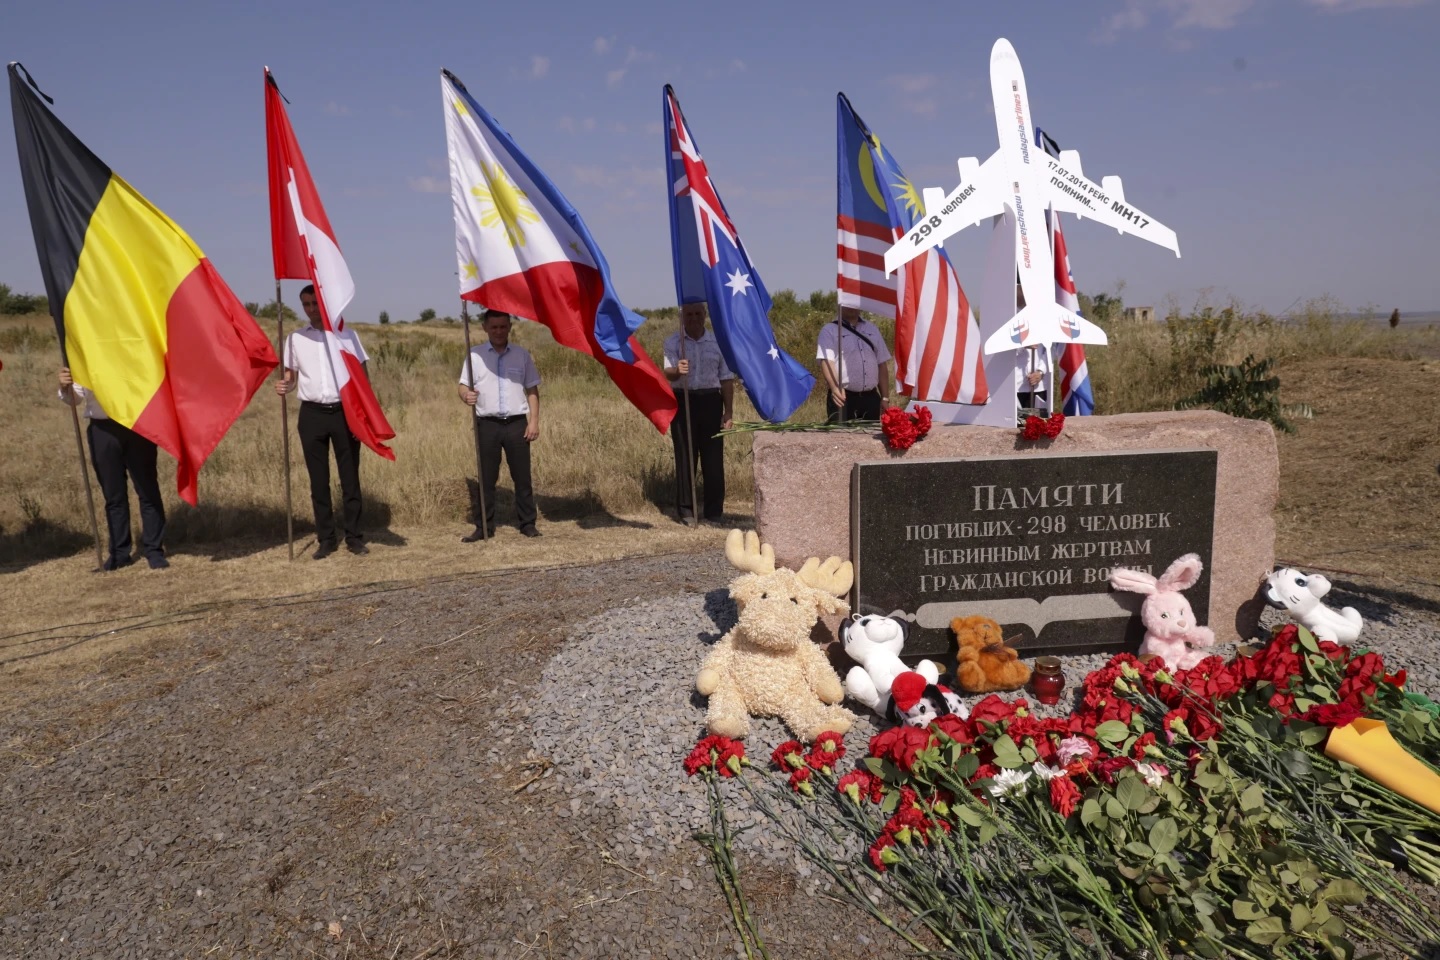 Các quốc gia tưởng niệm 10 năm thảm họa hàng không MH17